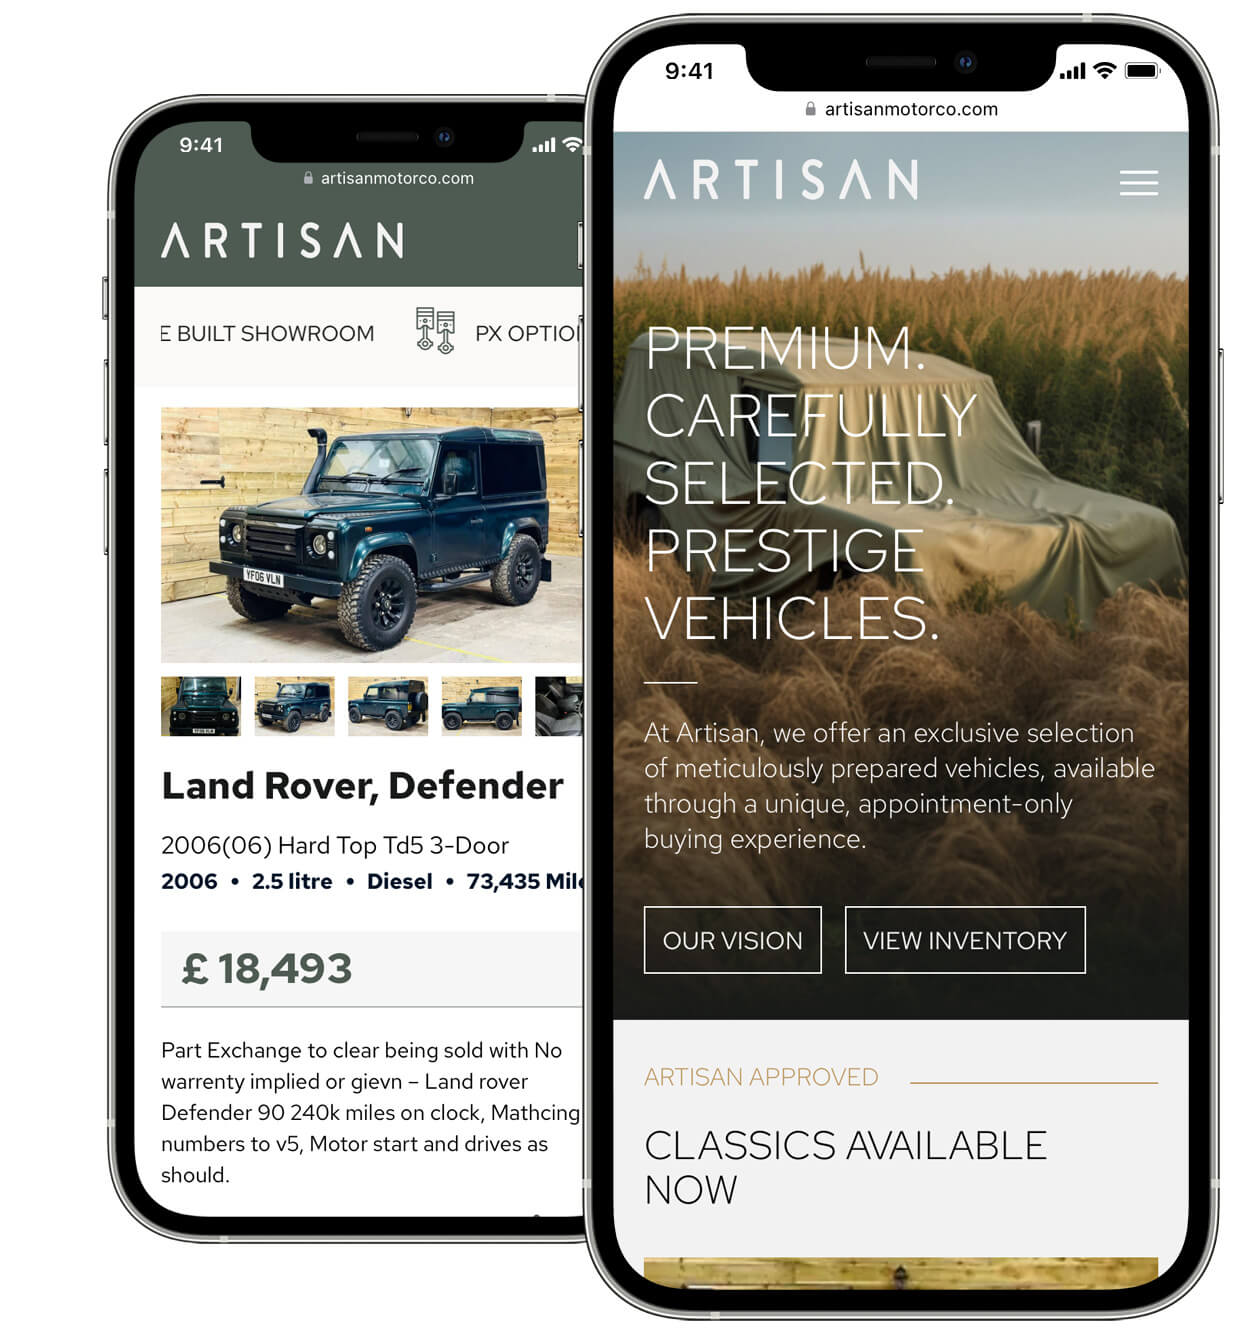 Artisan Car Dealer Mobile Website Design